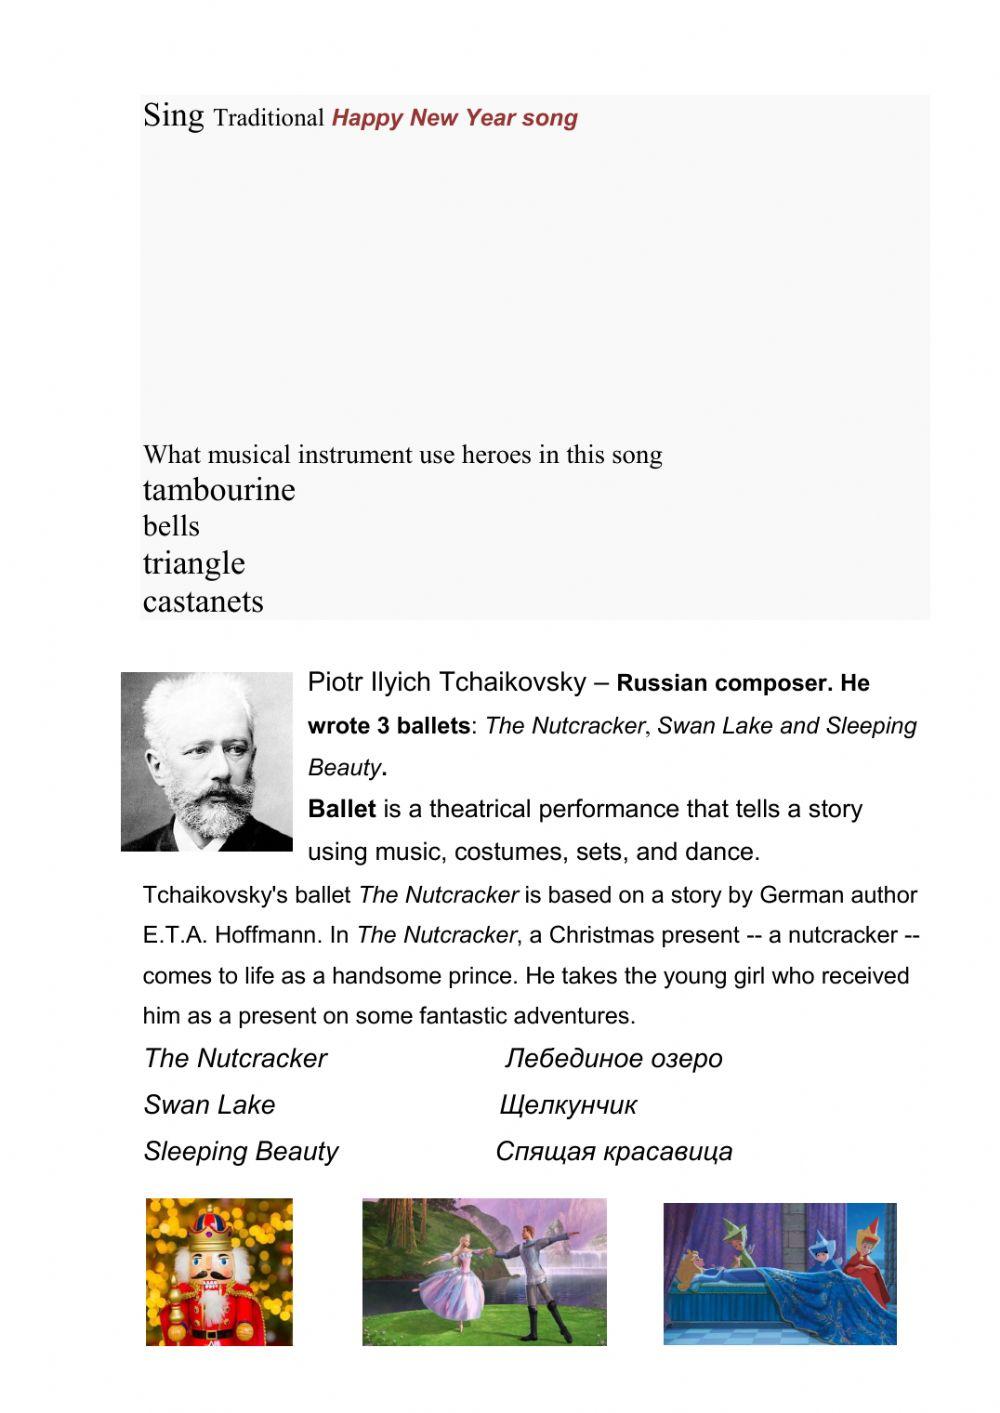 Tchaikovsky The Nutcracker